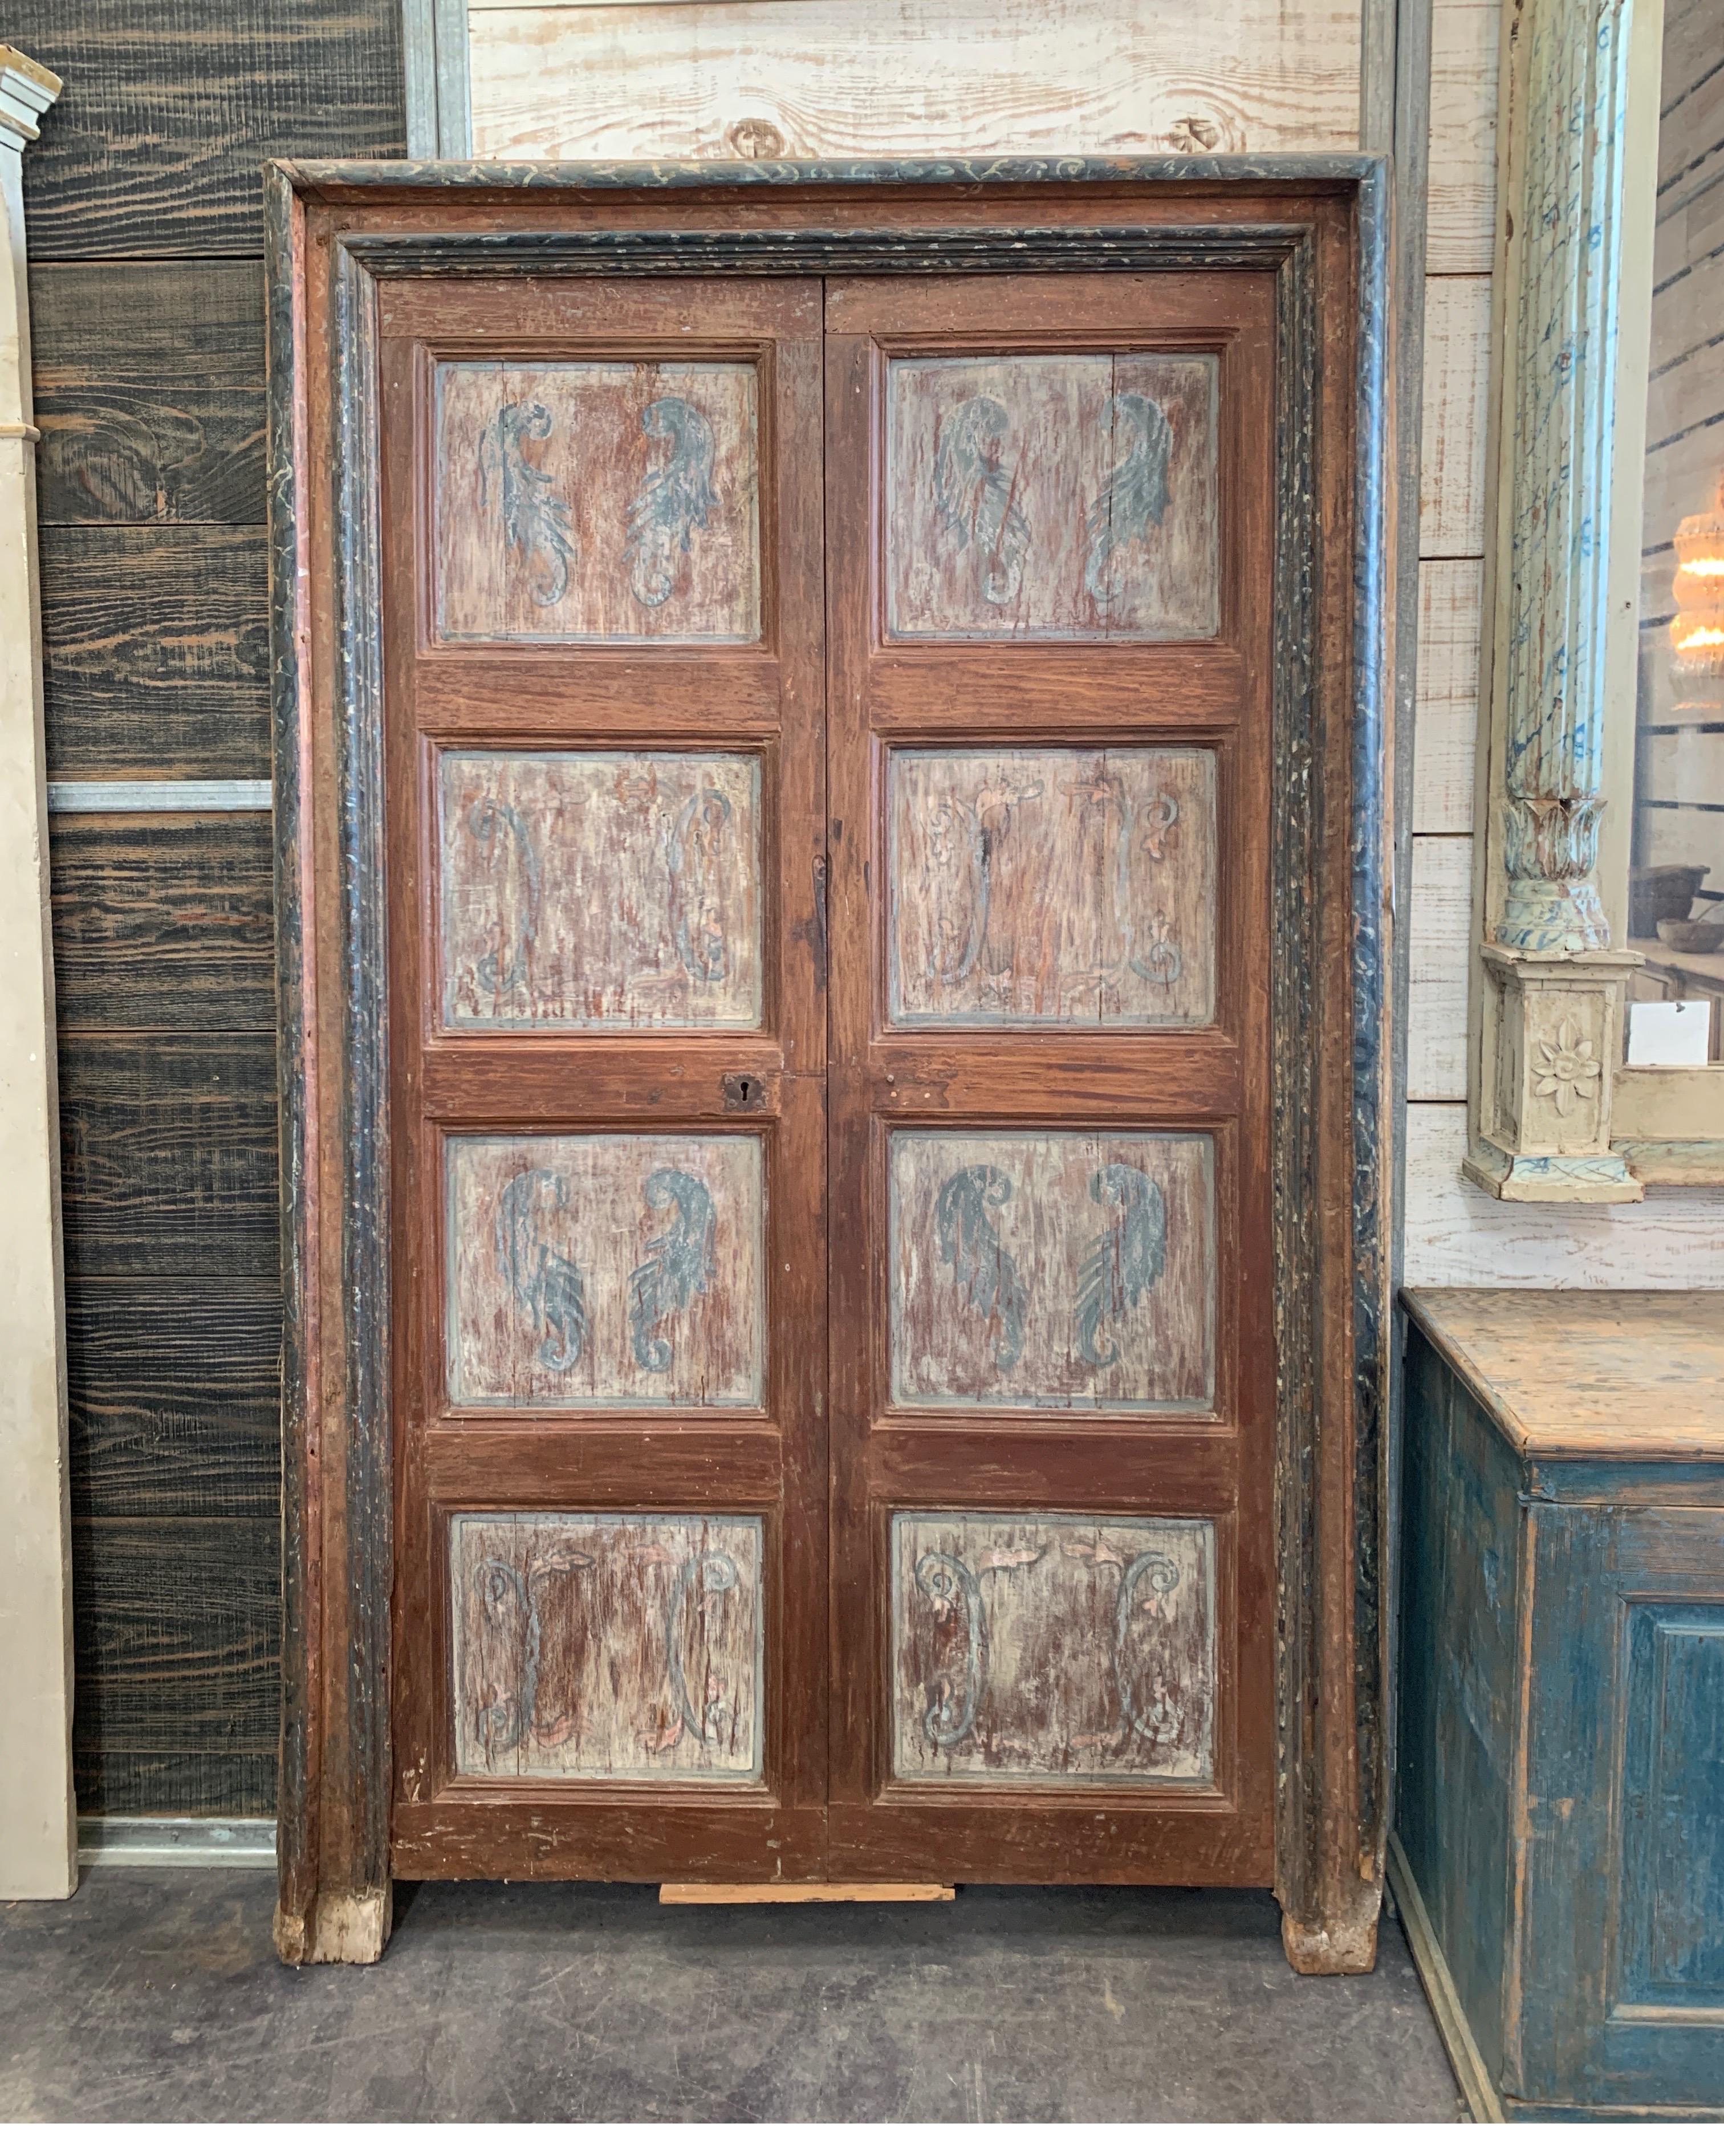 Diese frühen spanischen Türen sind voller Charakter und Charme mit den originalen Eisenbeschlägen an Vorder- und Rückseite. Es fehlt nur der Griff. Die Einfassung hat wunderschöne Farben von blauem und schwarzem Marmor-Effekt. Die Tür misst 44 B x